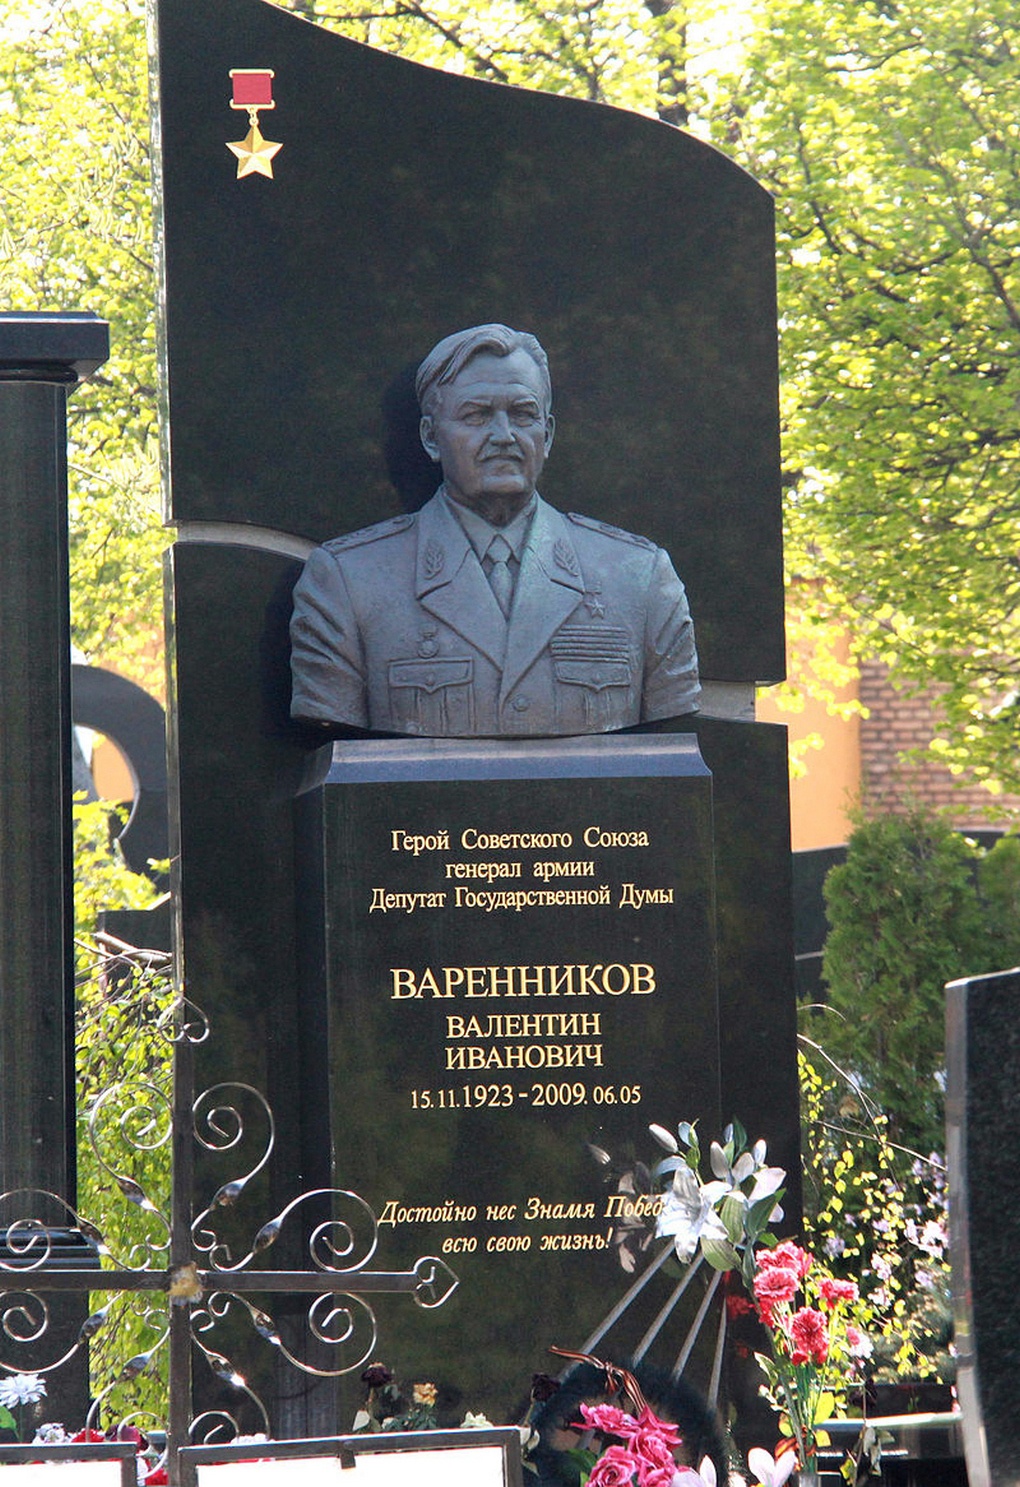 Памятник на могиле В.И. Варенникова.